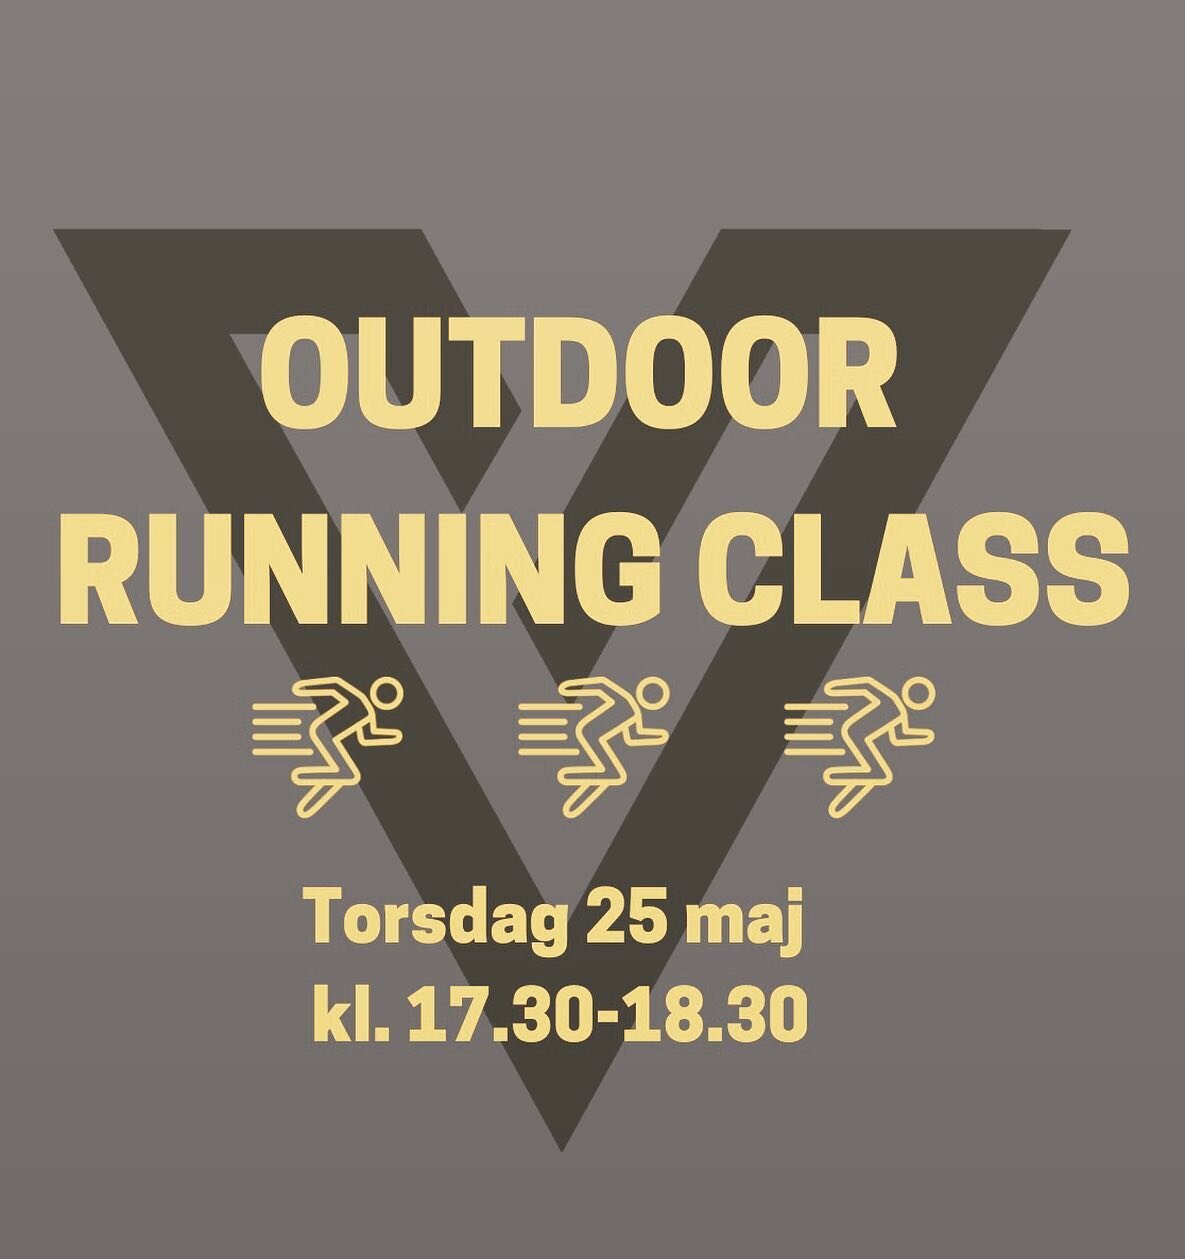 Outdoor running class 💥

Torsdag den 25 maj kommer vi ha en utomhus l&ouml;pklass kl. 17.30-18.30. 

En klass med endast l&ouml;pning. Det kommer vara fokus p&aring; l&ouml;pteknik och kondition. Vi kommer k&ouml;ra olika intervaller och intensitete